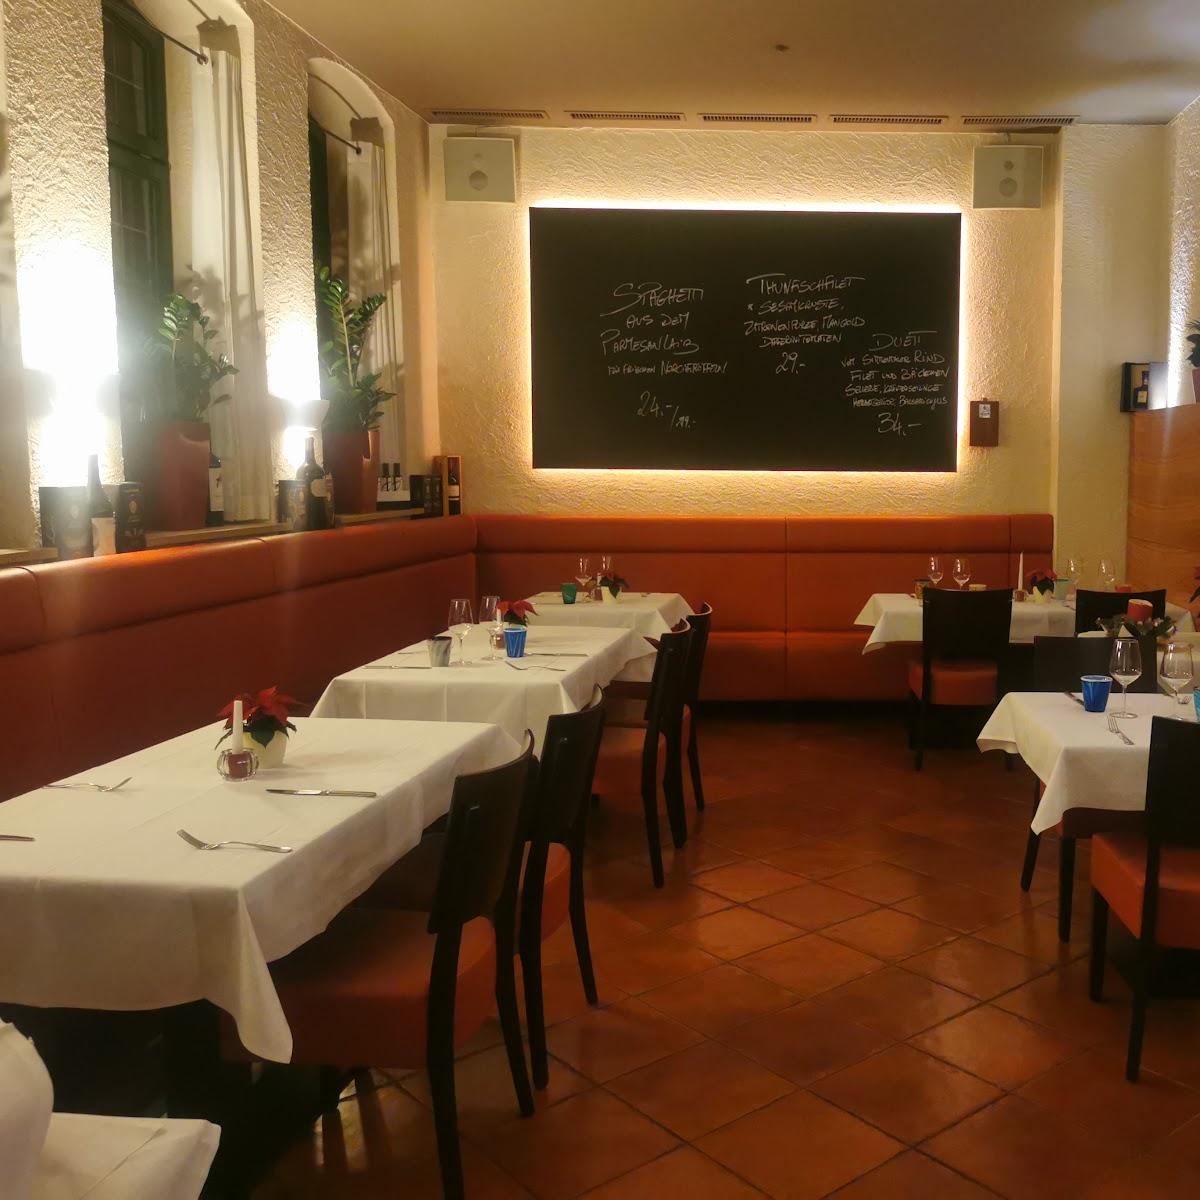 Restaurant "Ristorante L